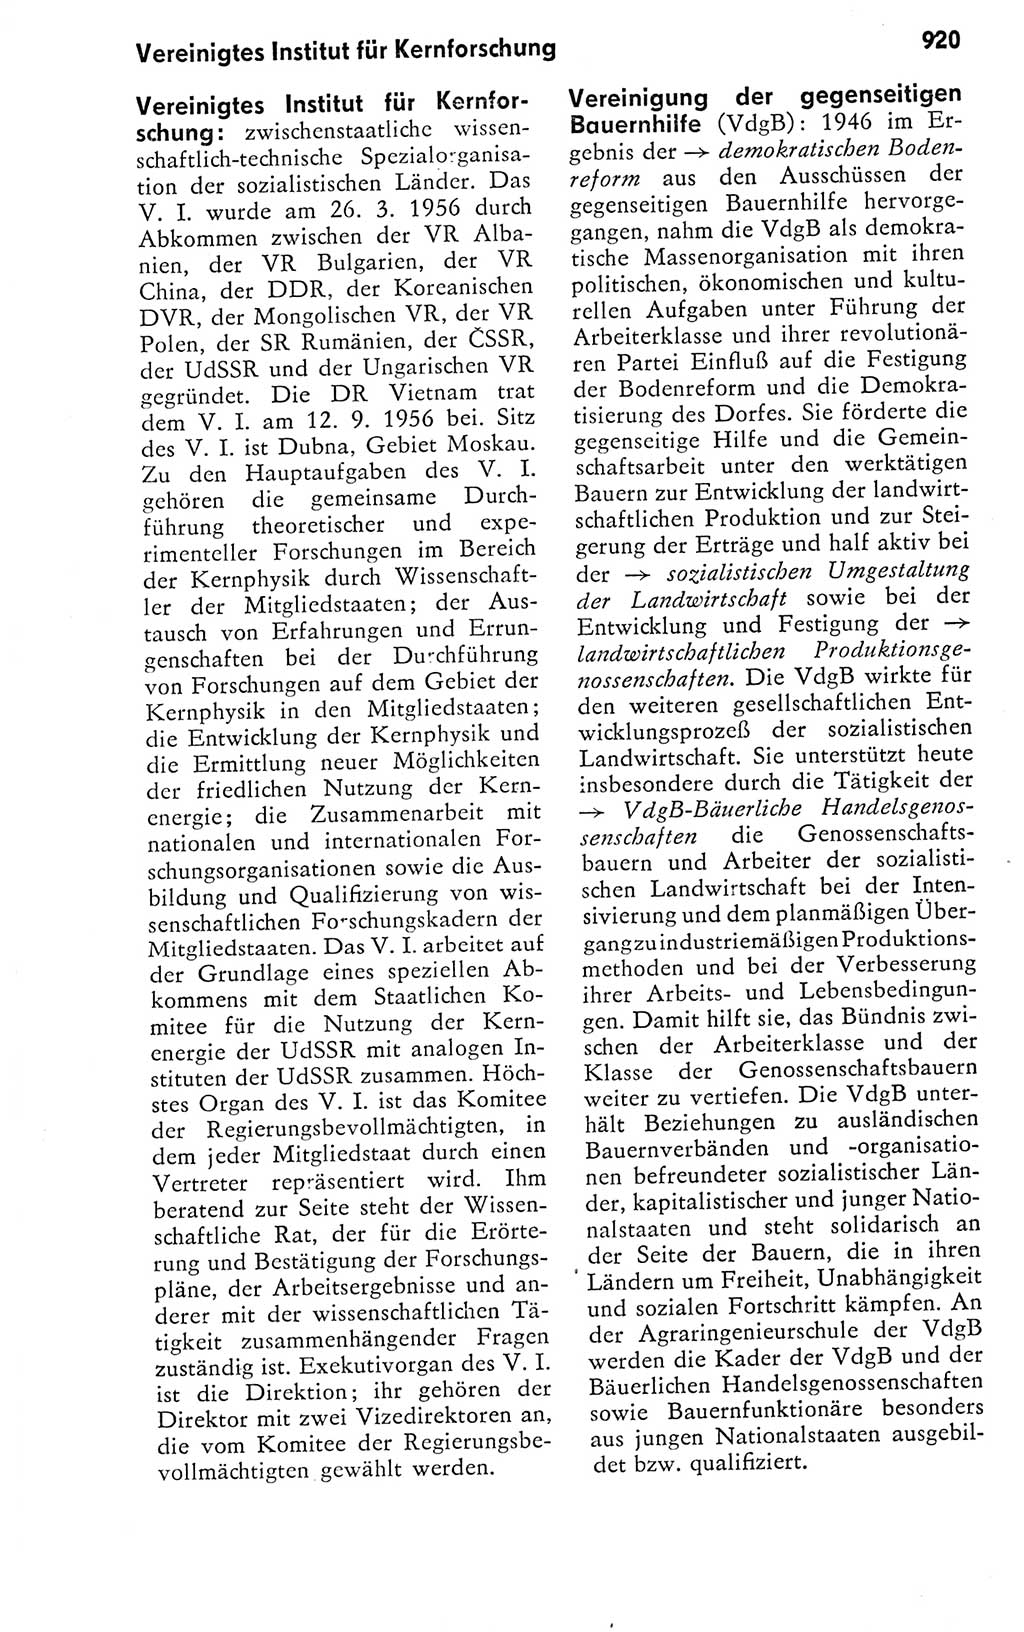 Kleines politisches Wörterbuch [Deutsche Demokratische Republik (DDR)] 1978, Seite 920 (Kl. pol. Wb. DDR 1978, S. 920)